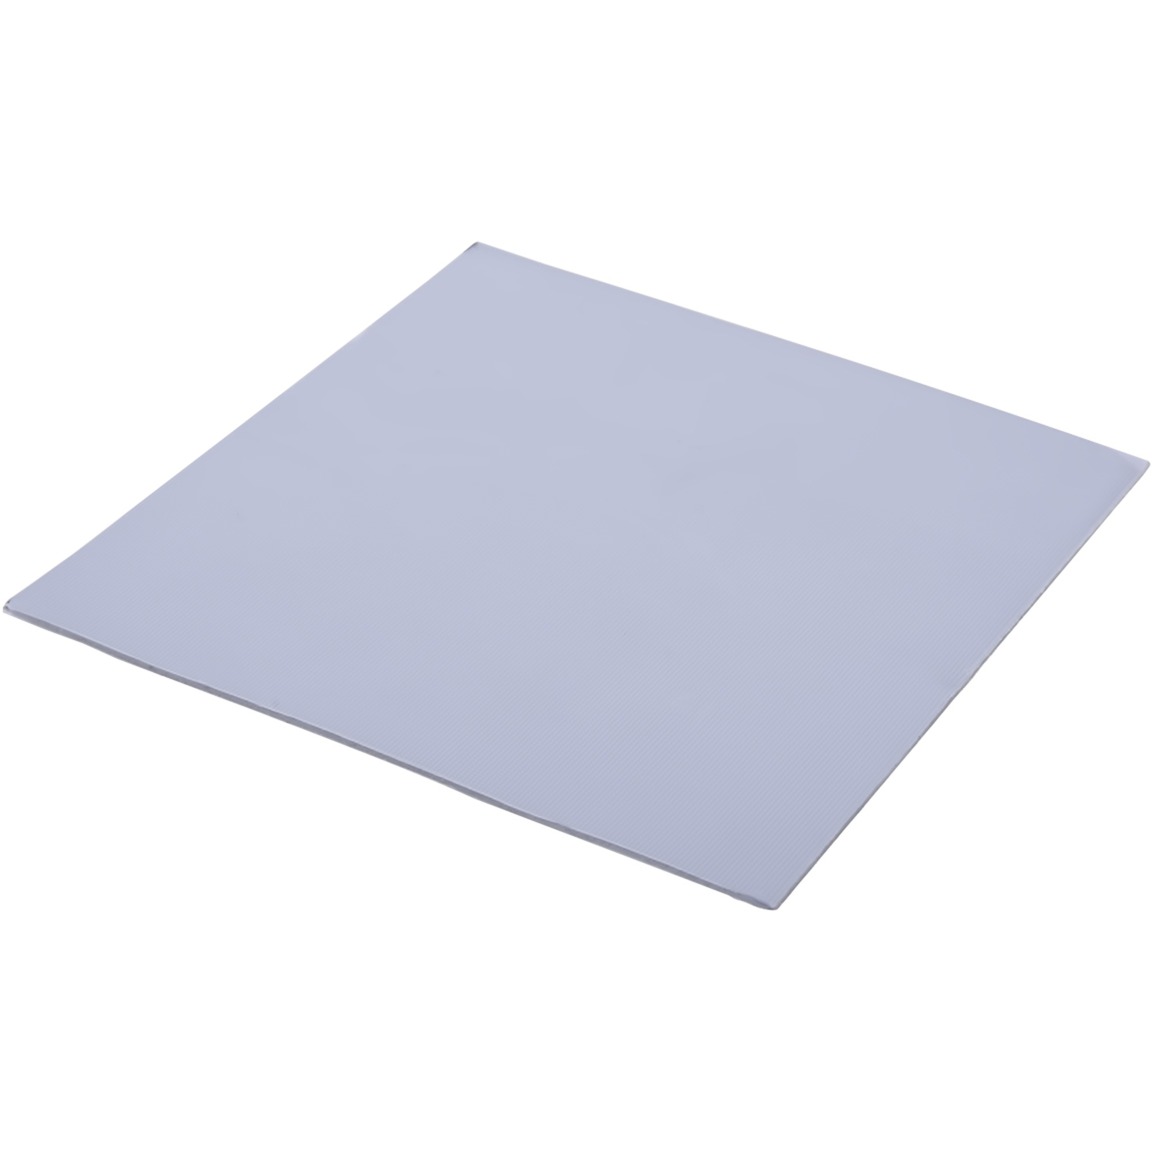 Image of Alternate - Eisschicht Wärmeleitpad - 17W/mK 100x100x1mm, Wärmeleitpads online einkaufen bei Alternate